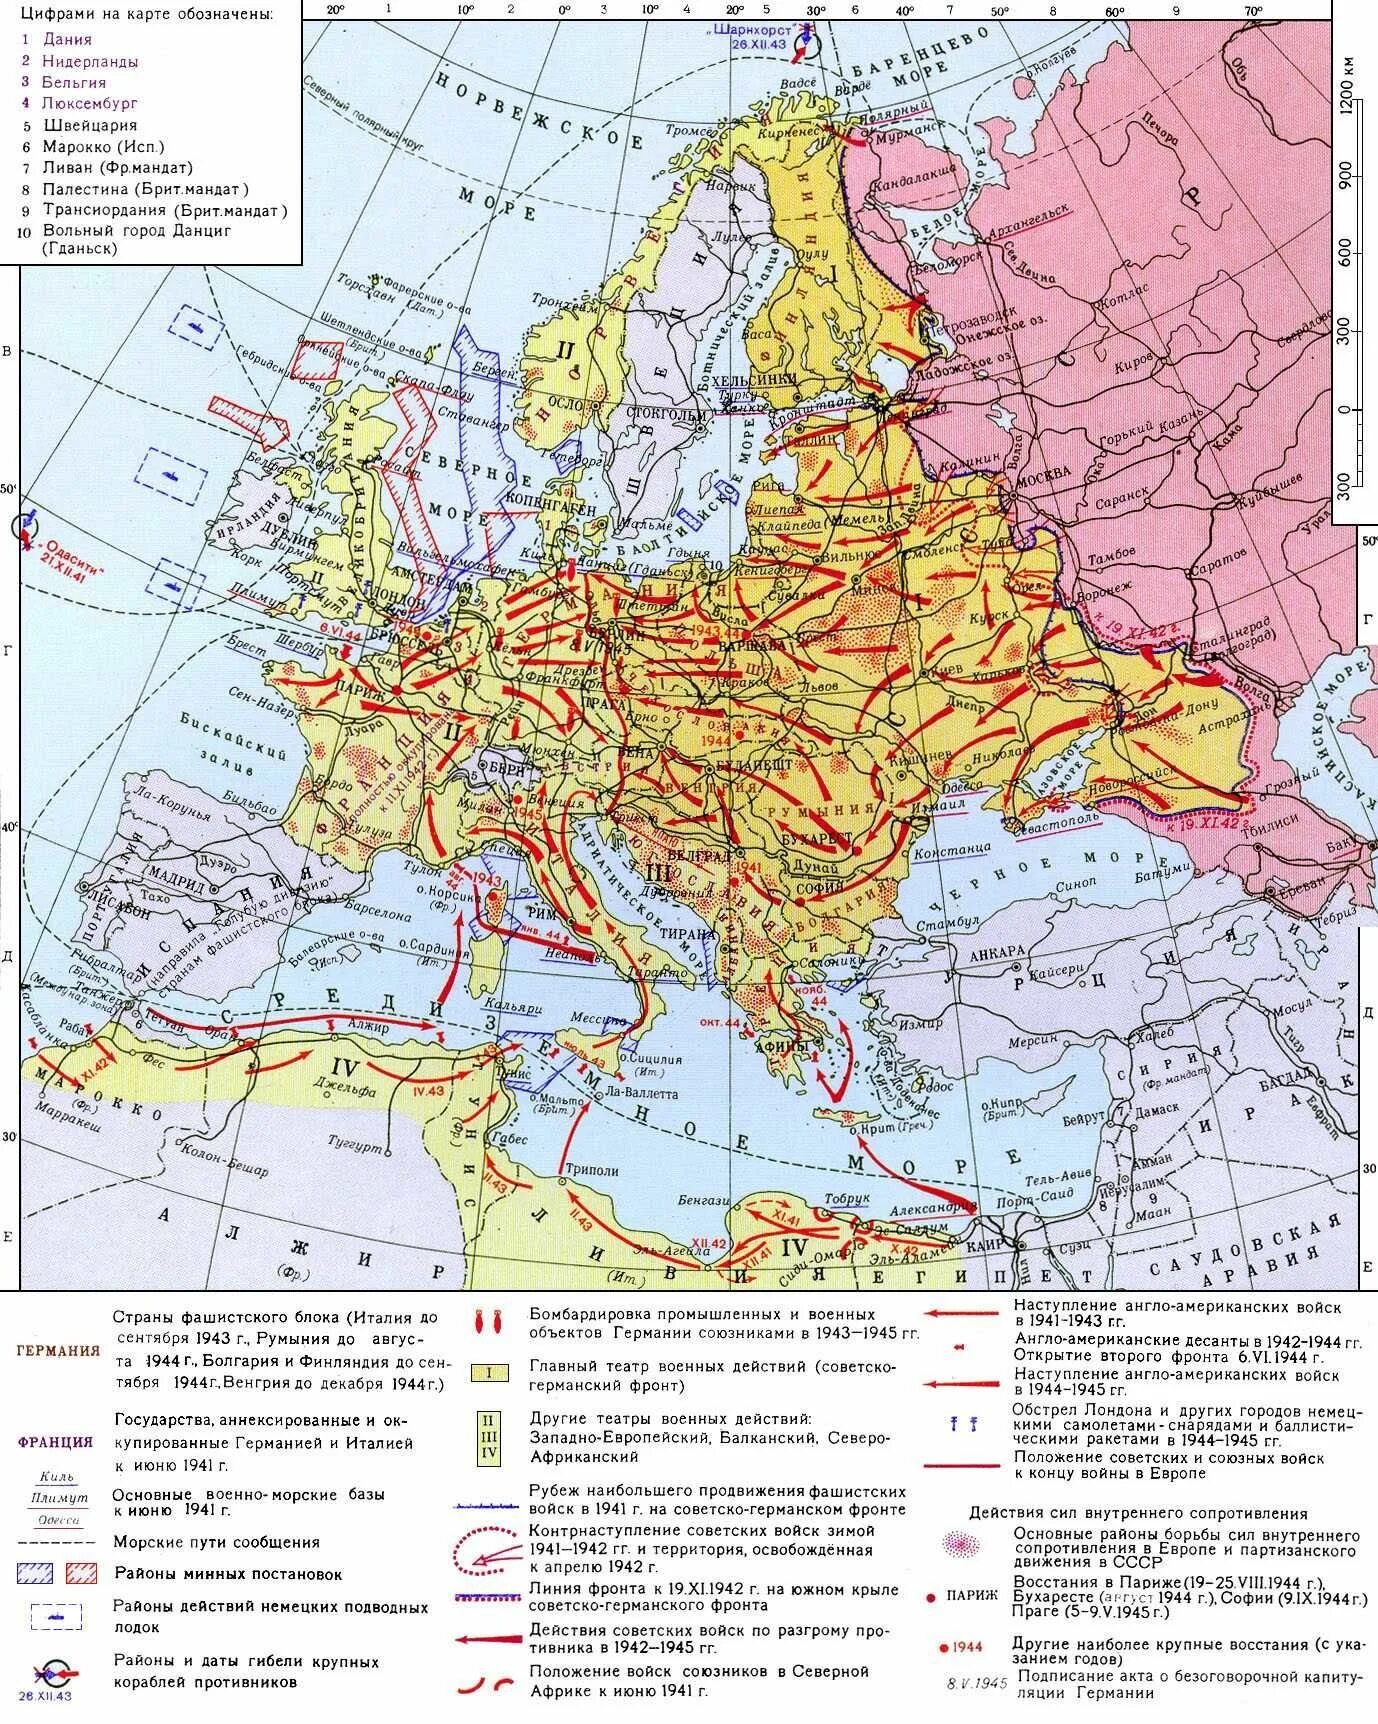 Какие страны захватила германия к 1940. Карта второй мировой войны 1939-1945. Карта второй мировой войны 1942-1945.